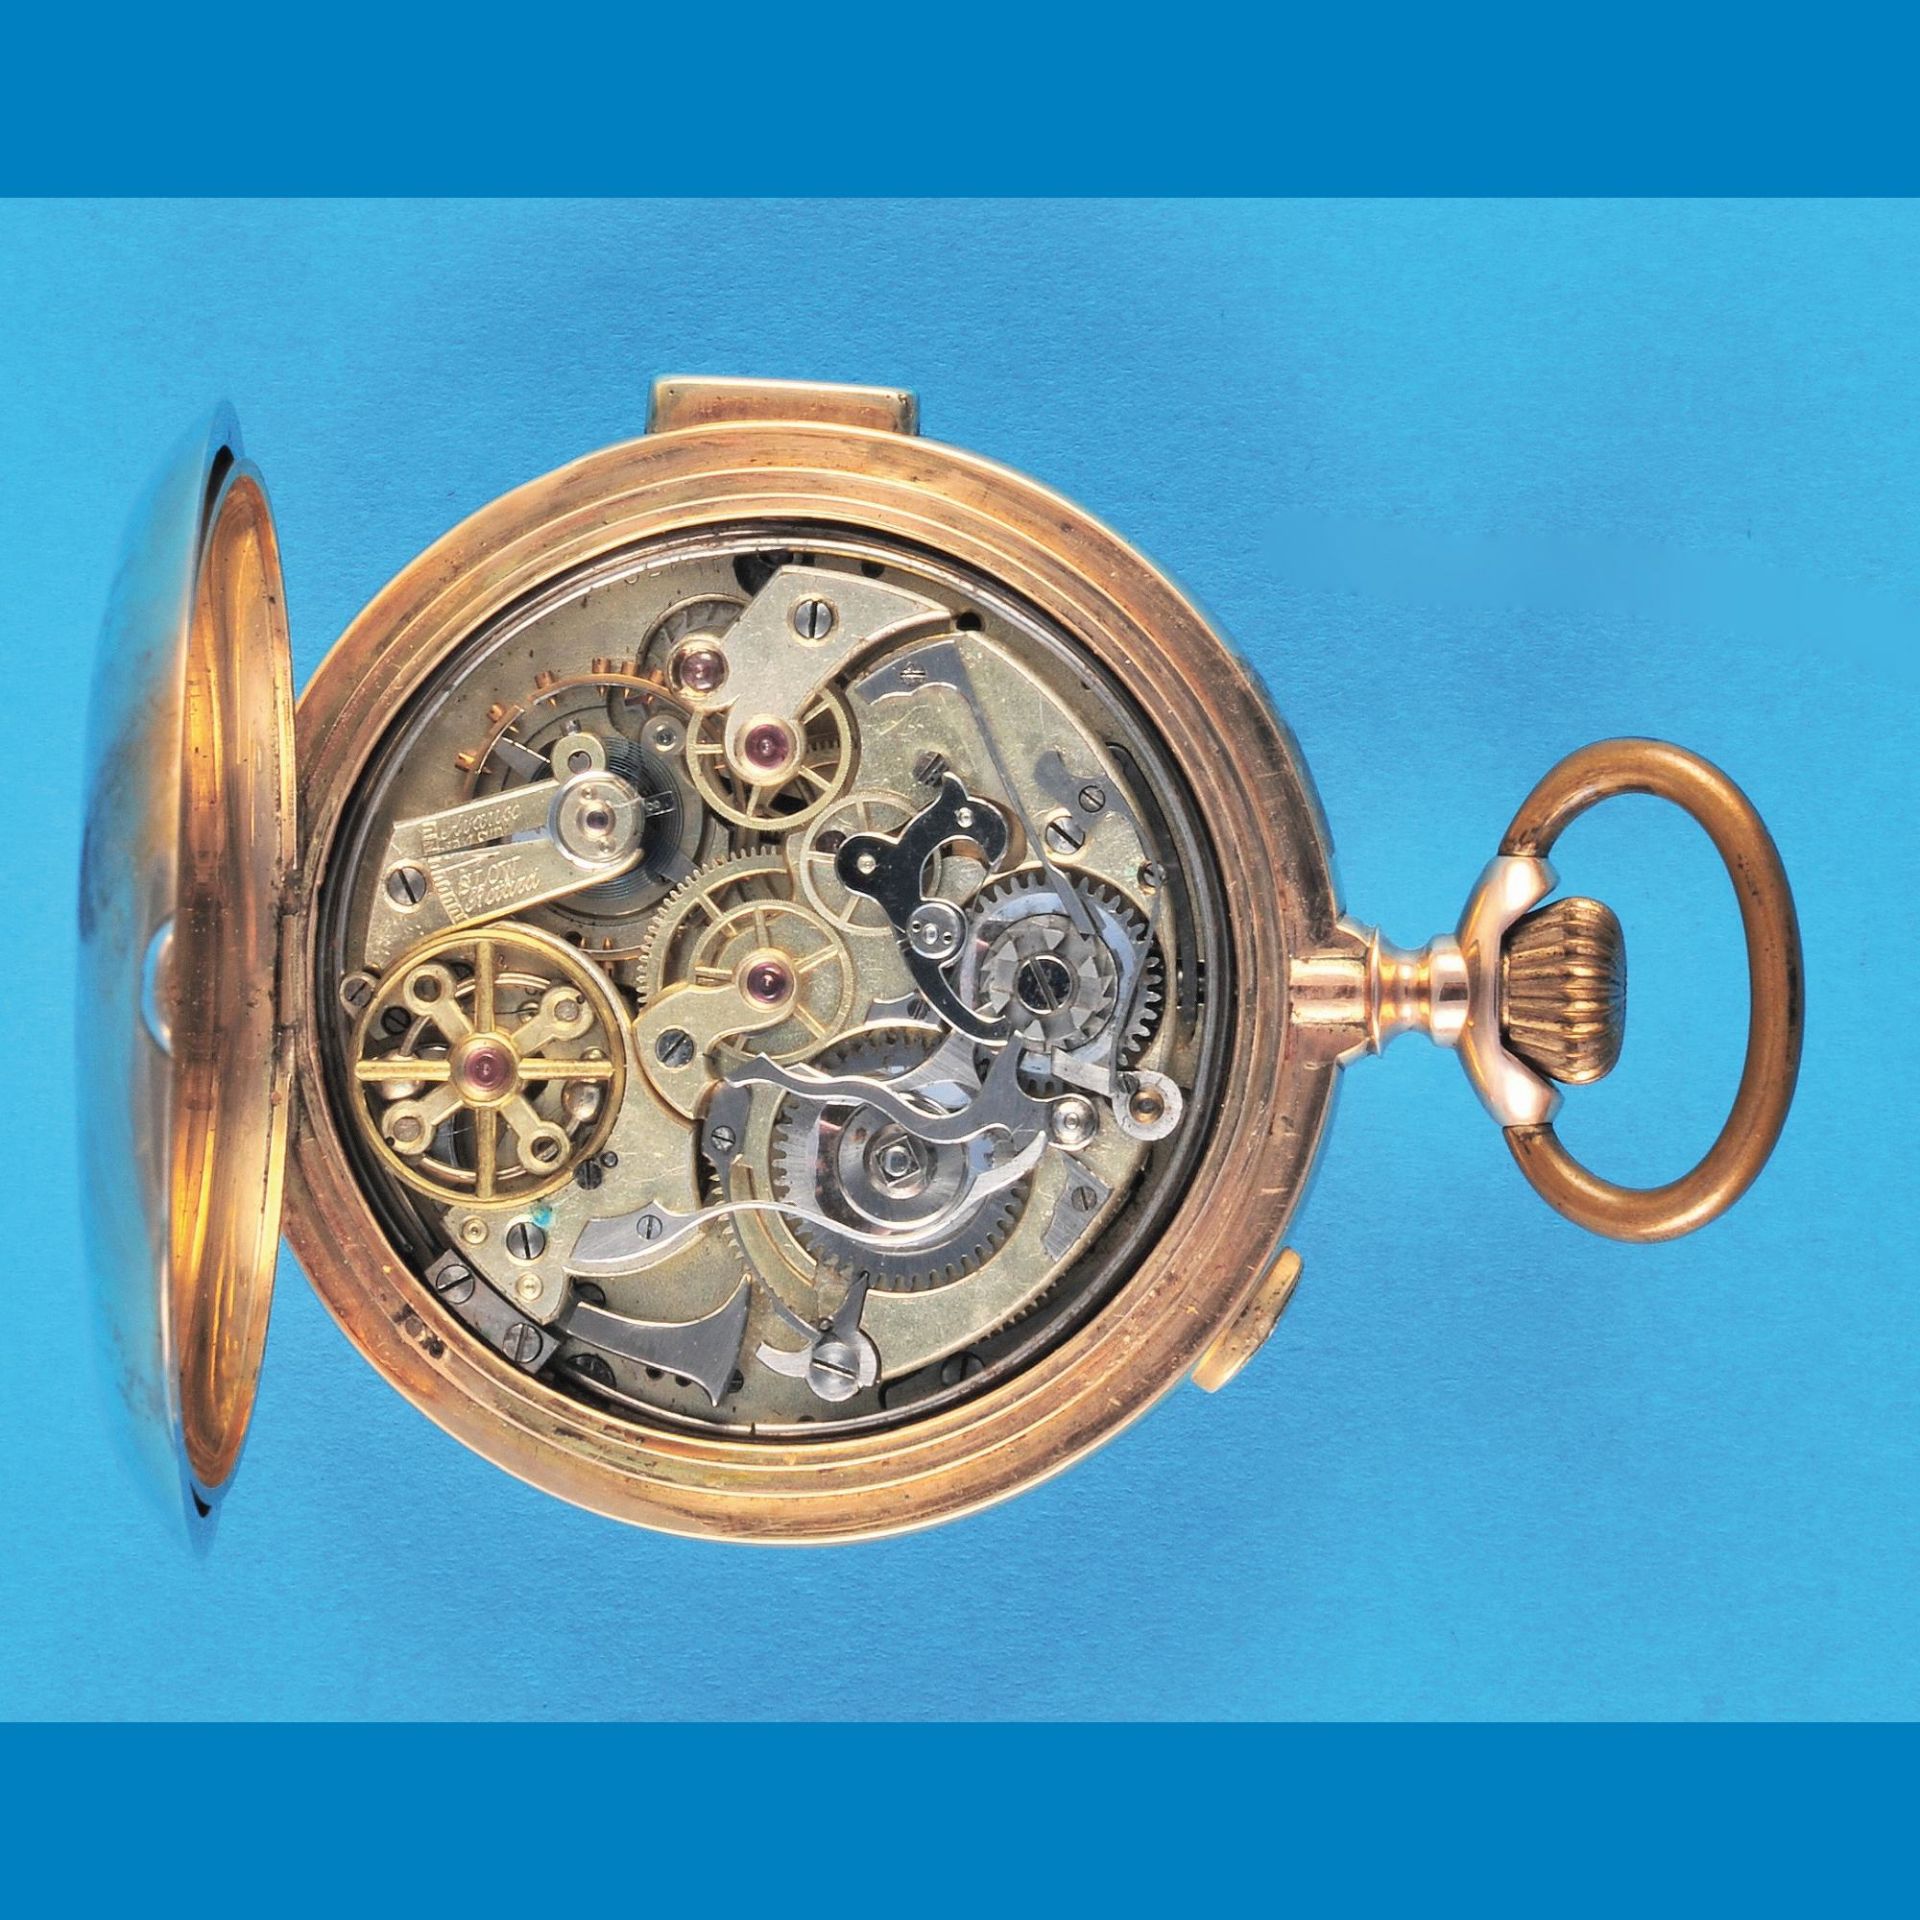 Goldtaschenuhr mit Sprungdeckel, ¼-Repetition und Chronograph, 14-ct.-3-Deckel-Goldgehäuse (Dellen